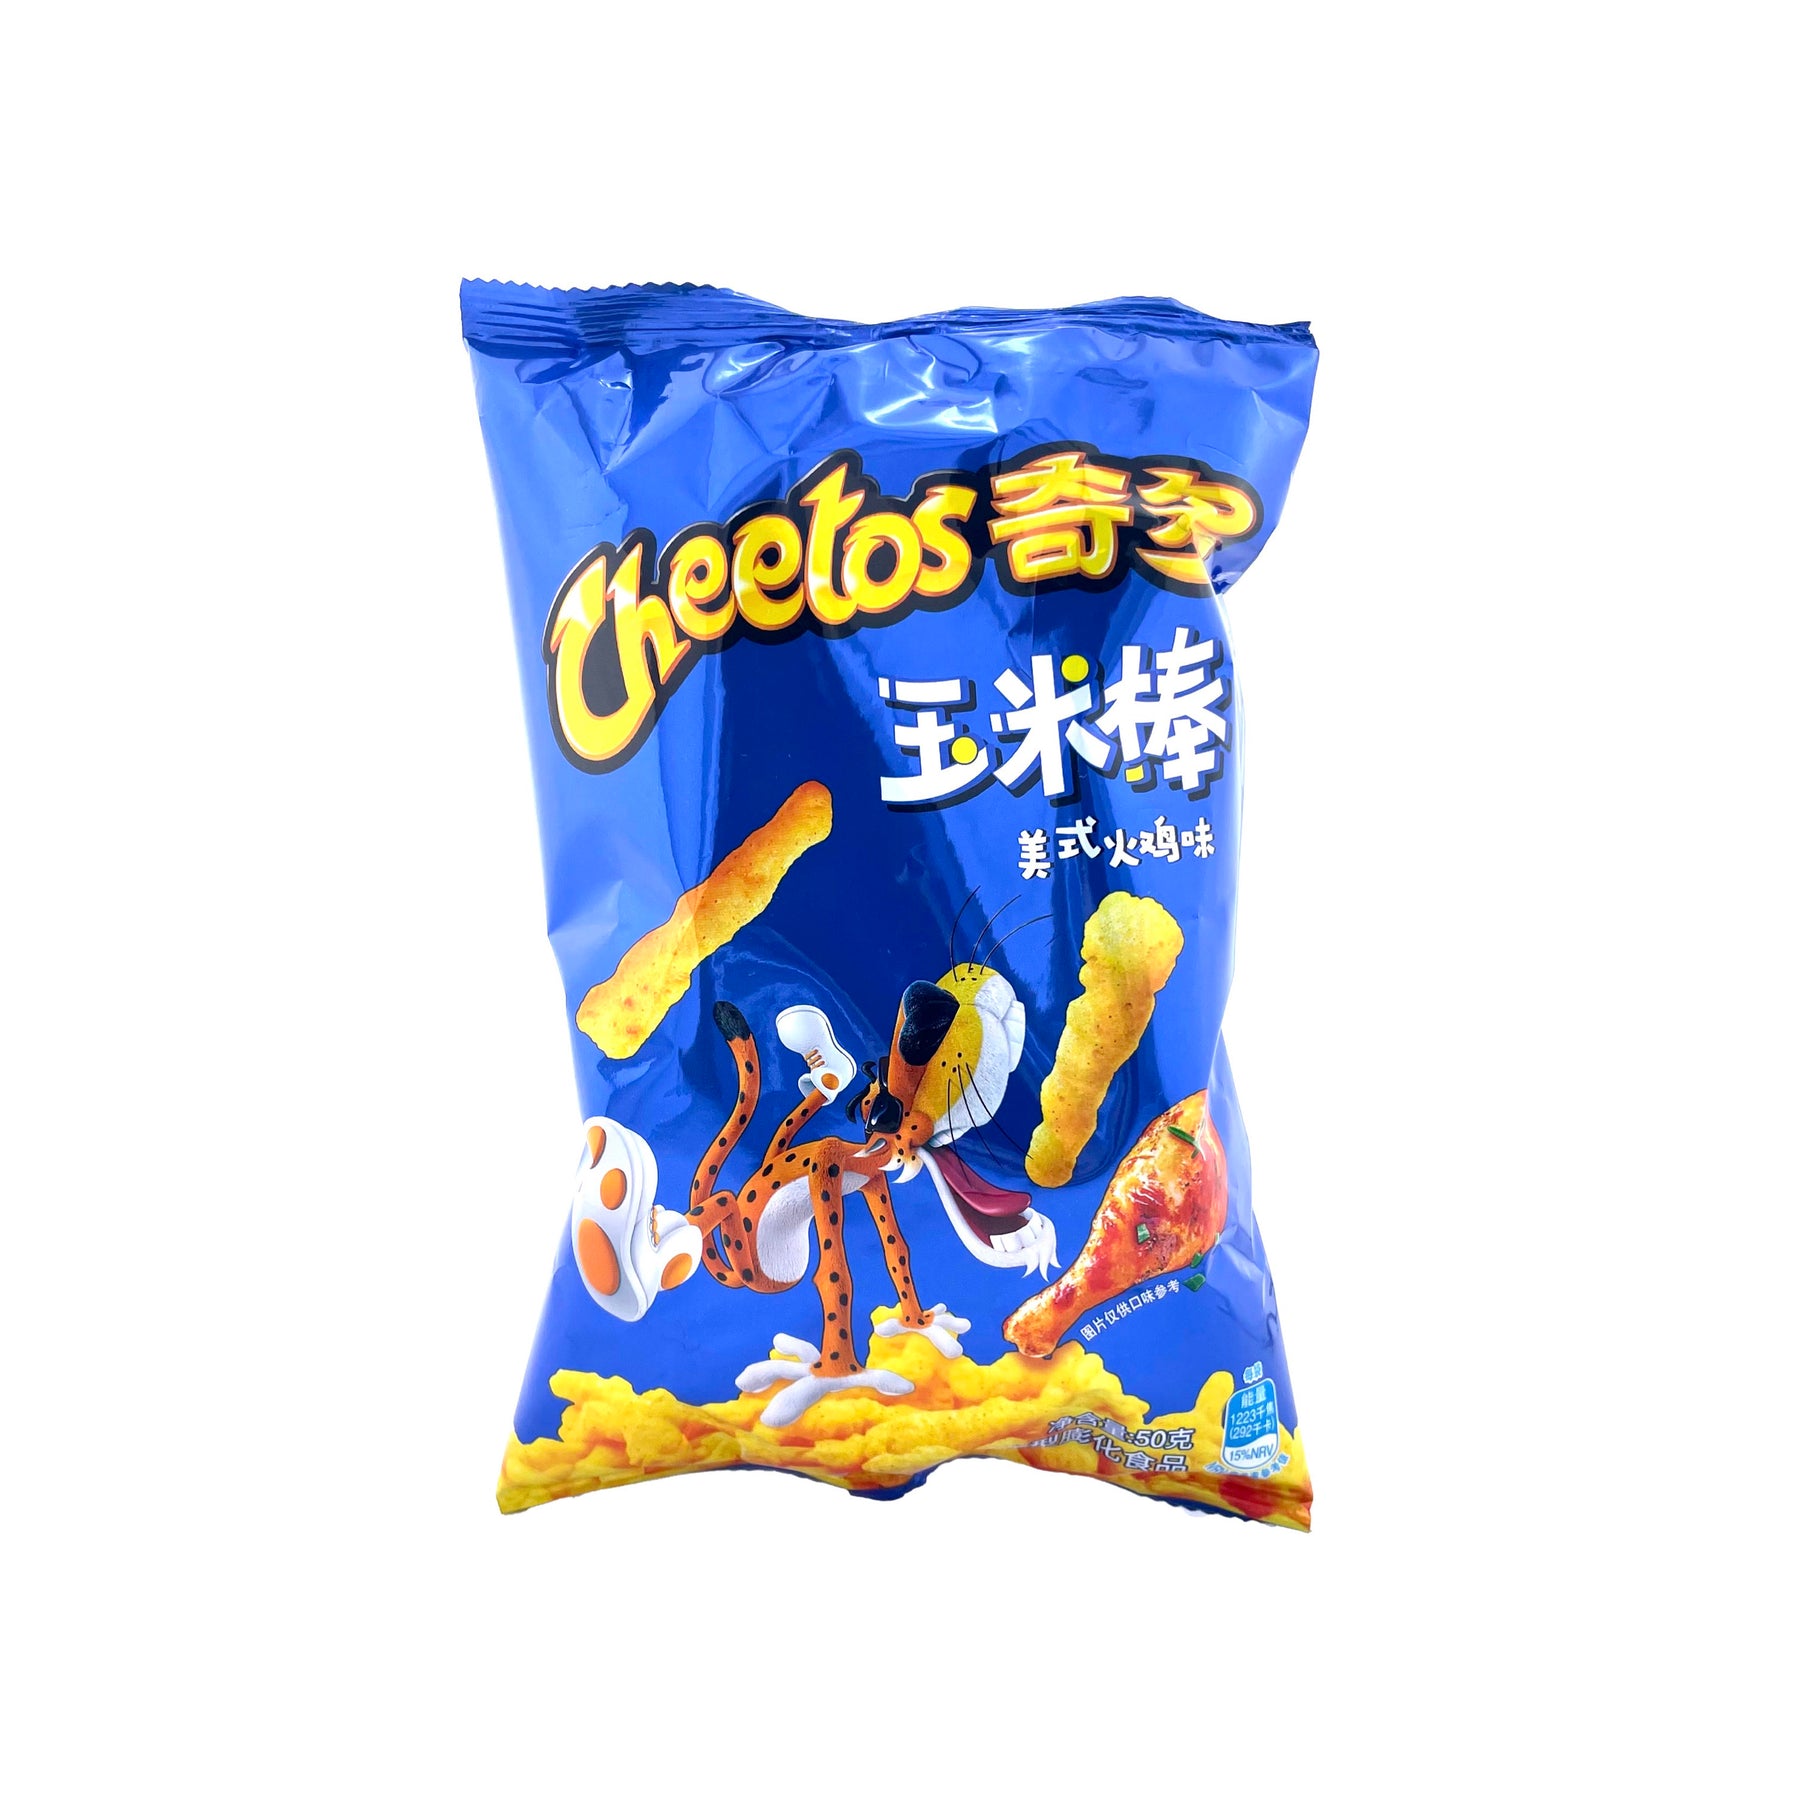 Cheetos Turkey Leg Flavor China - 50g